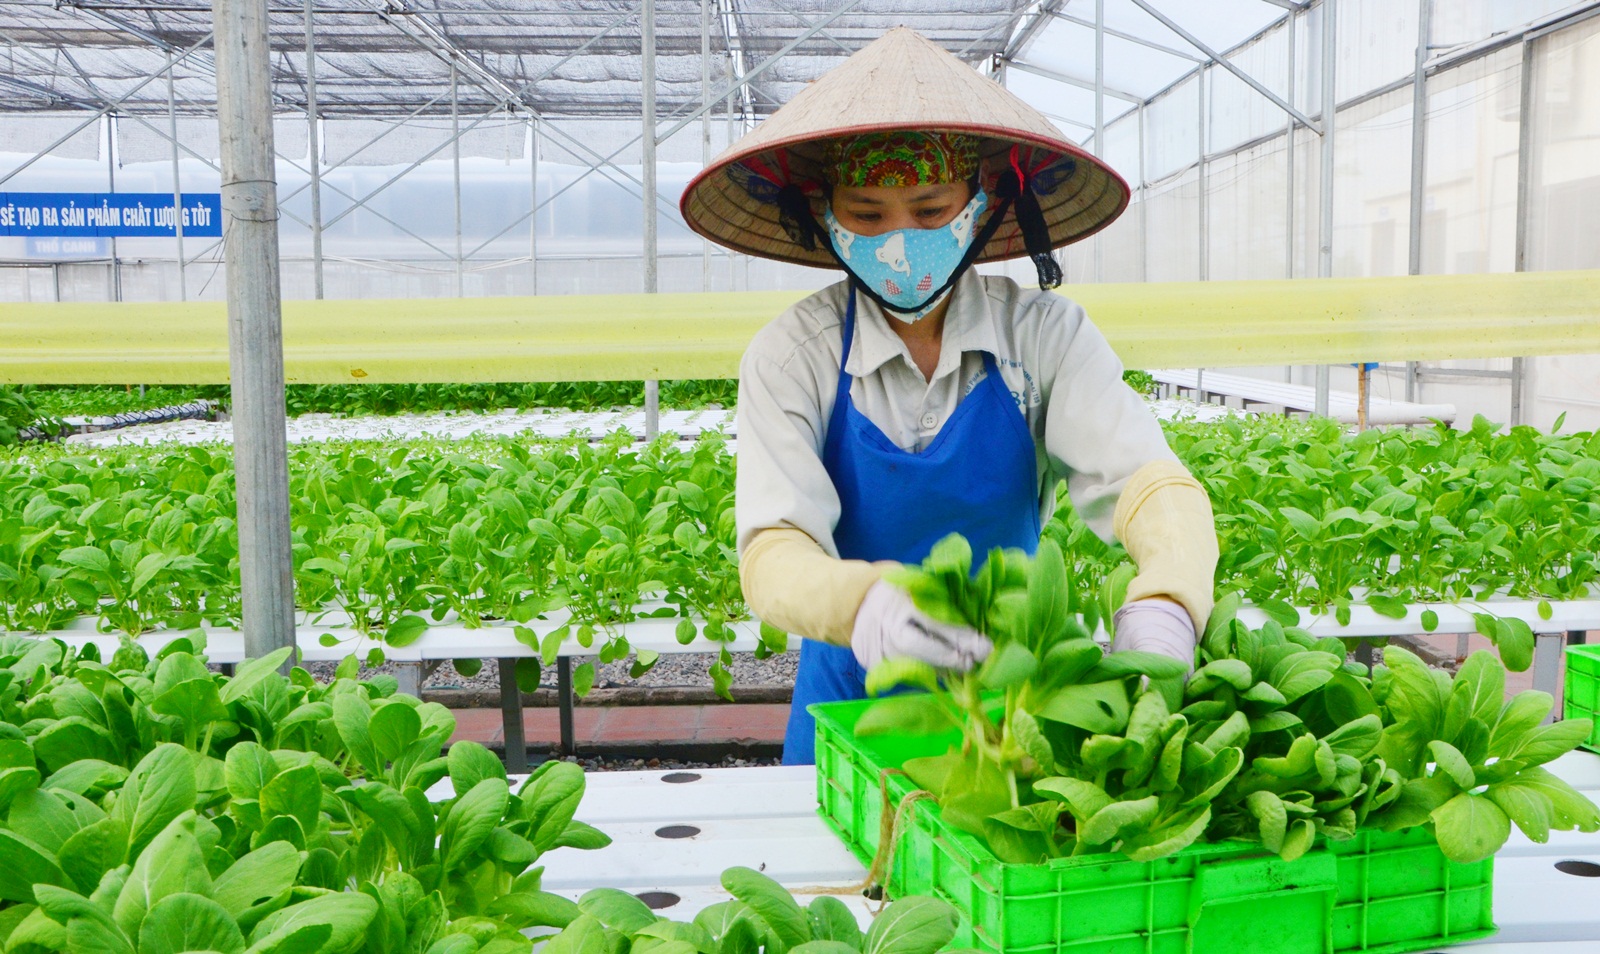 Chuyển đổi số, ứng dụng KHCN vào sản xuất giúp nâng cao năng suất, chất lượng nông sản Việt